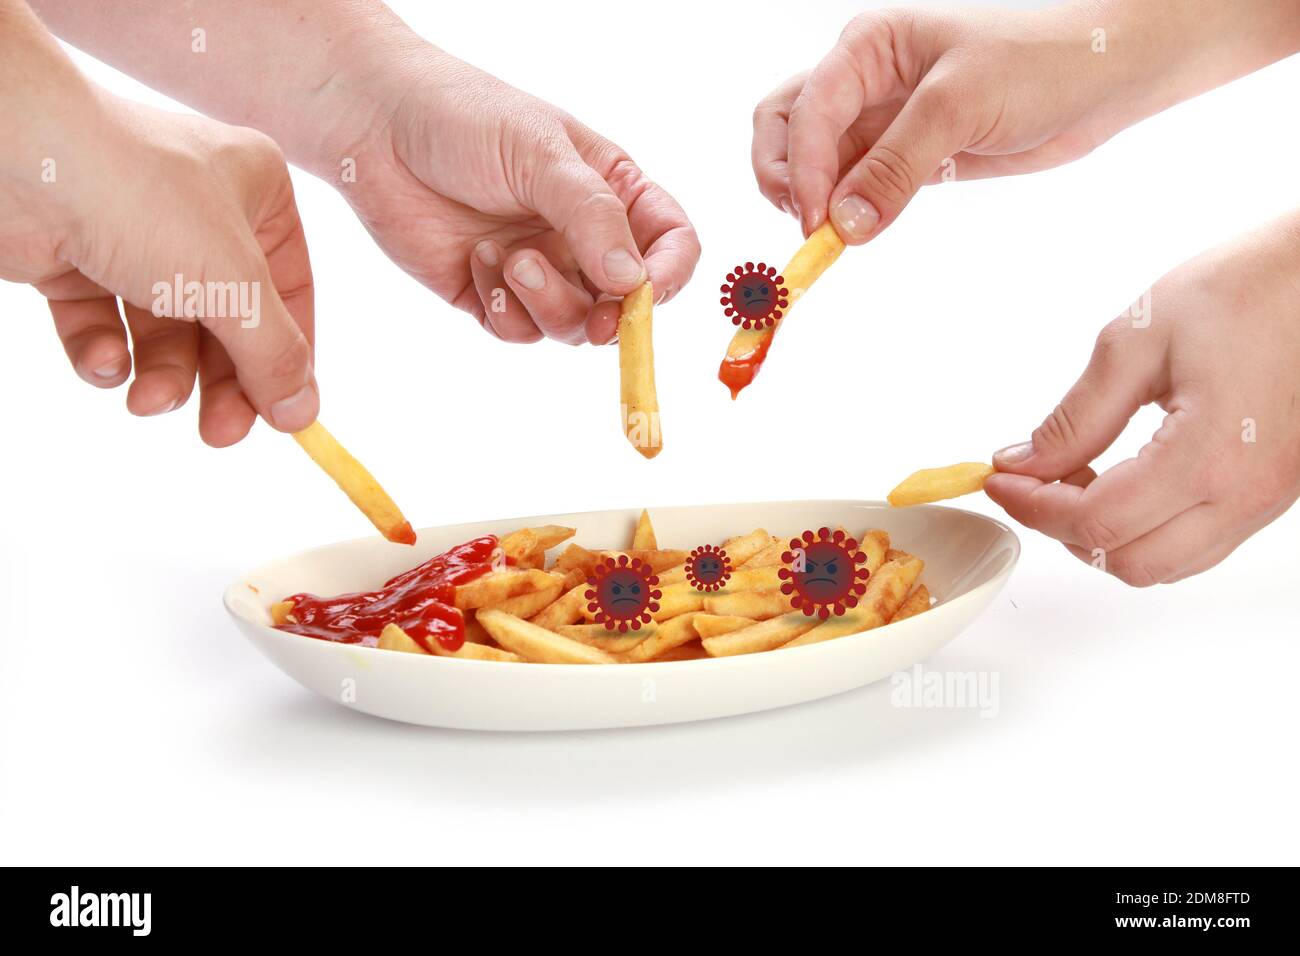 Un gros plan des mains qui prennent les frites de la même assiette en propageant le virus Banque D'Images